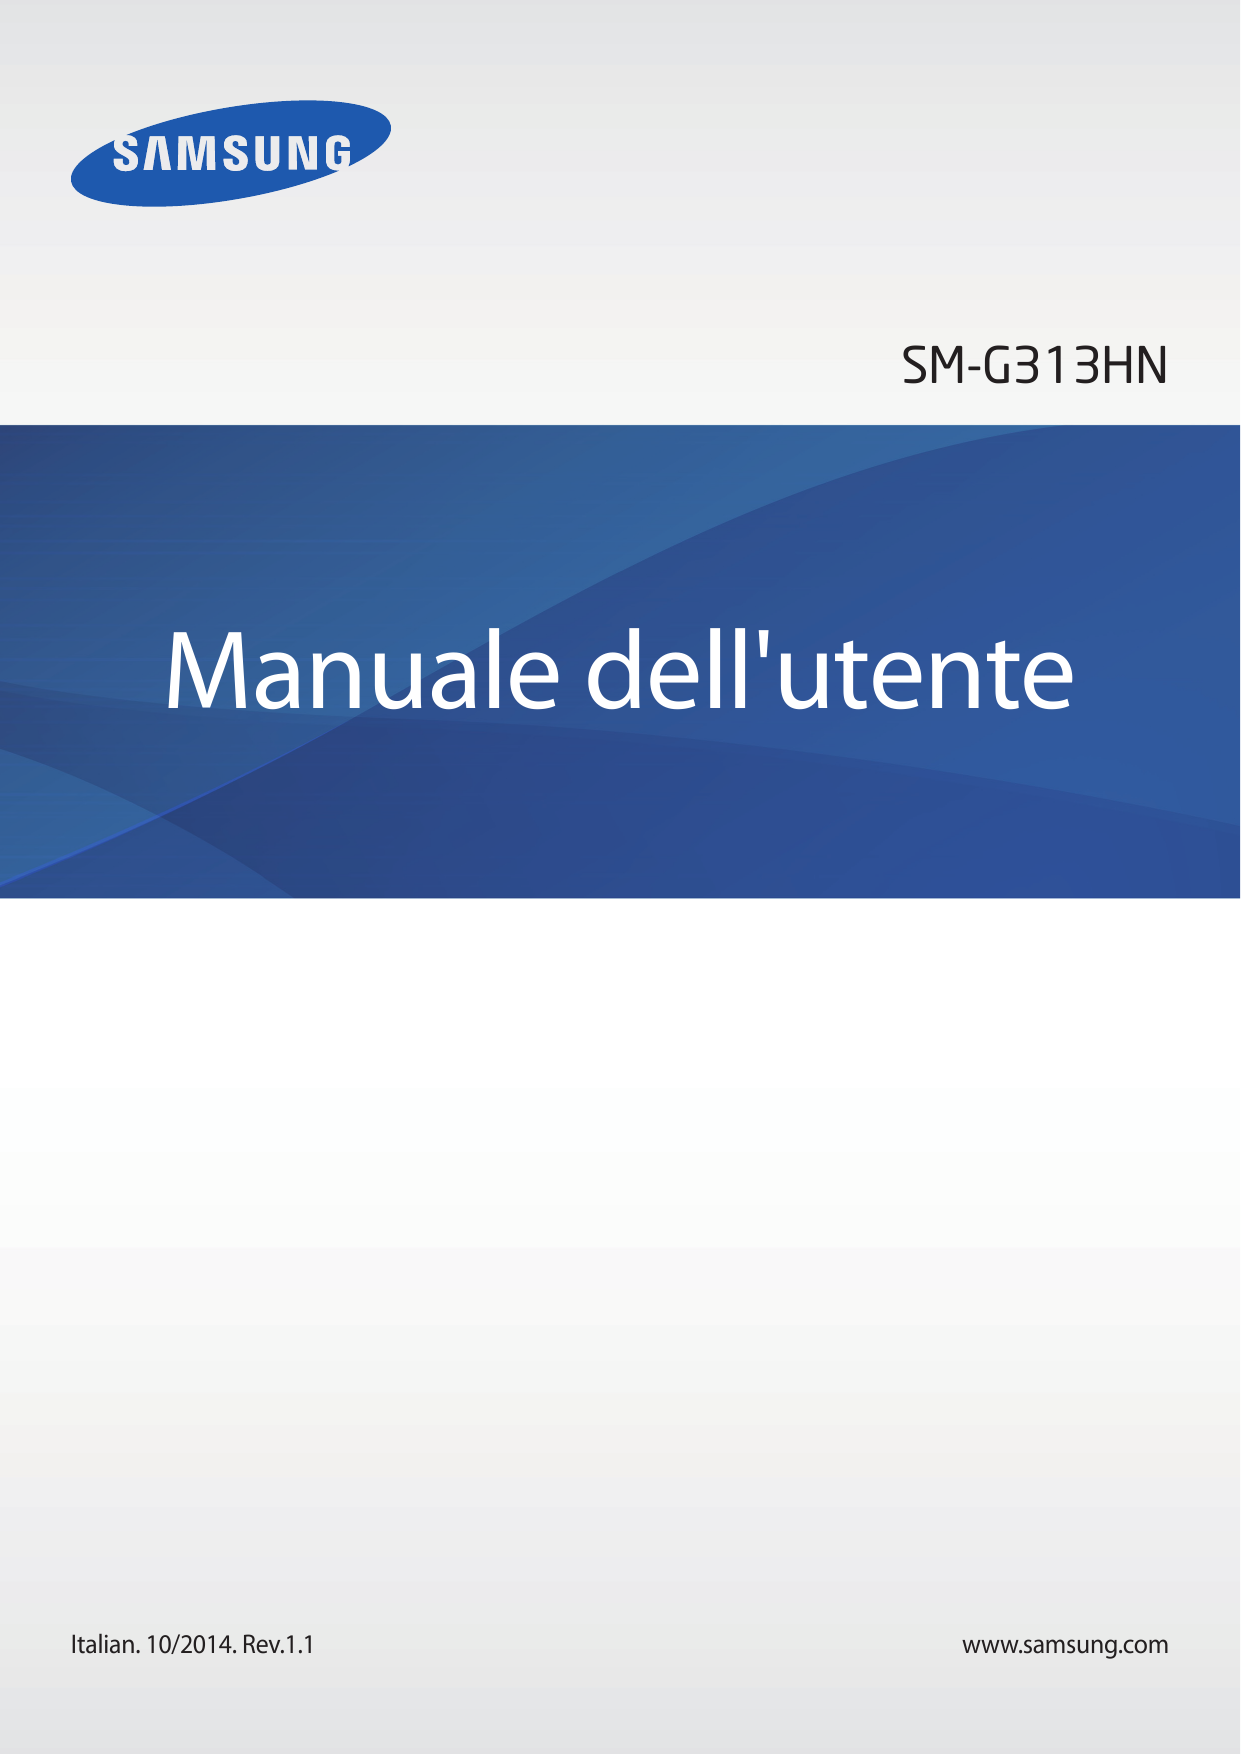 SM-G313HNManuale dell'utenteItalian. 10/2014. Rev.1.1www.samsung.com